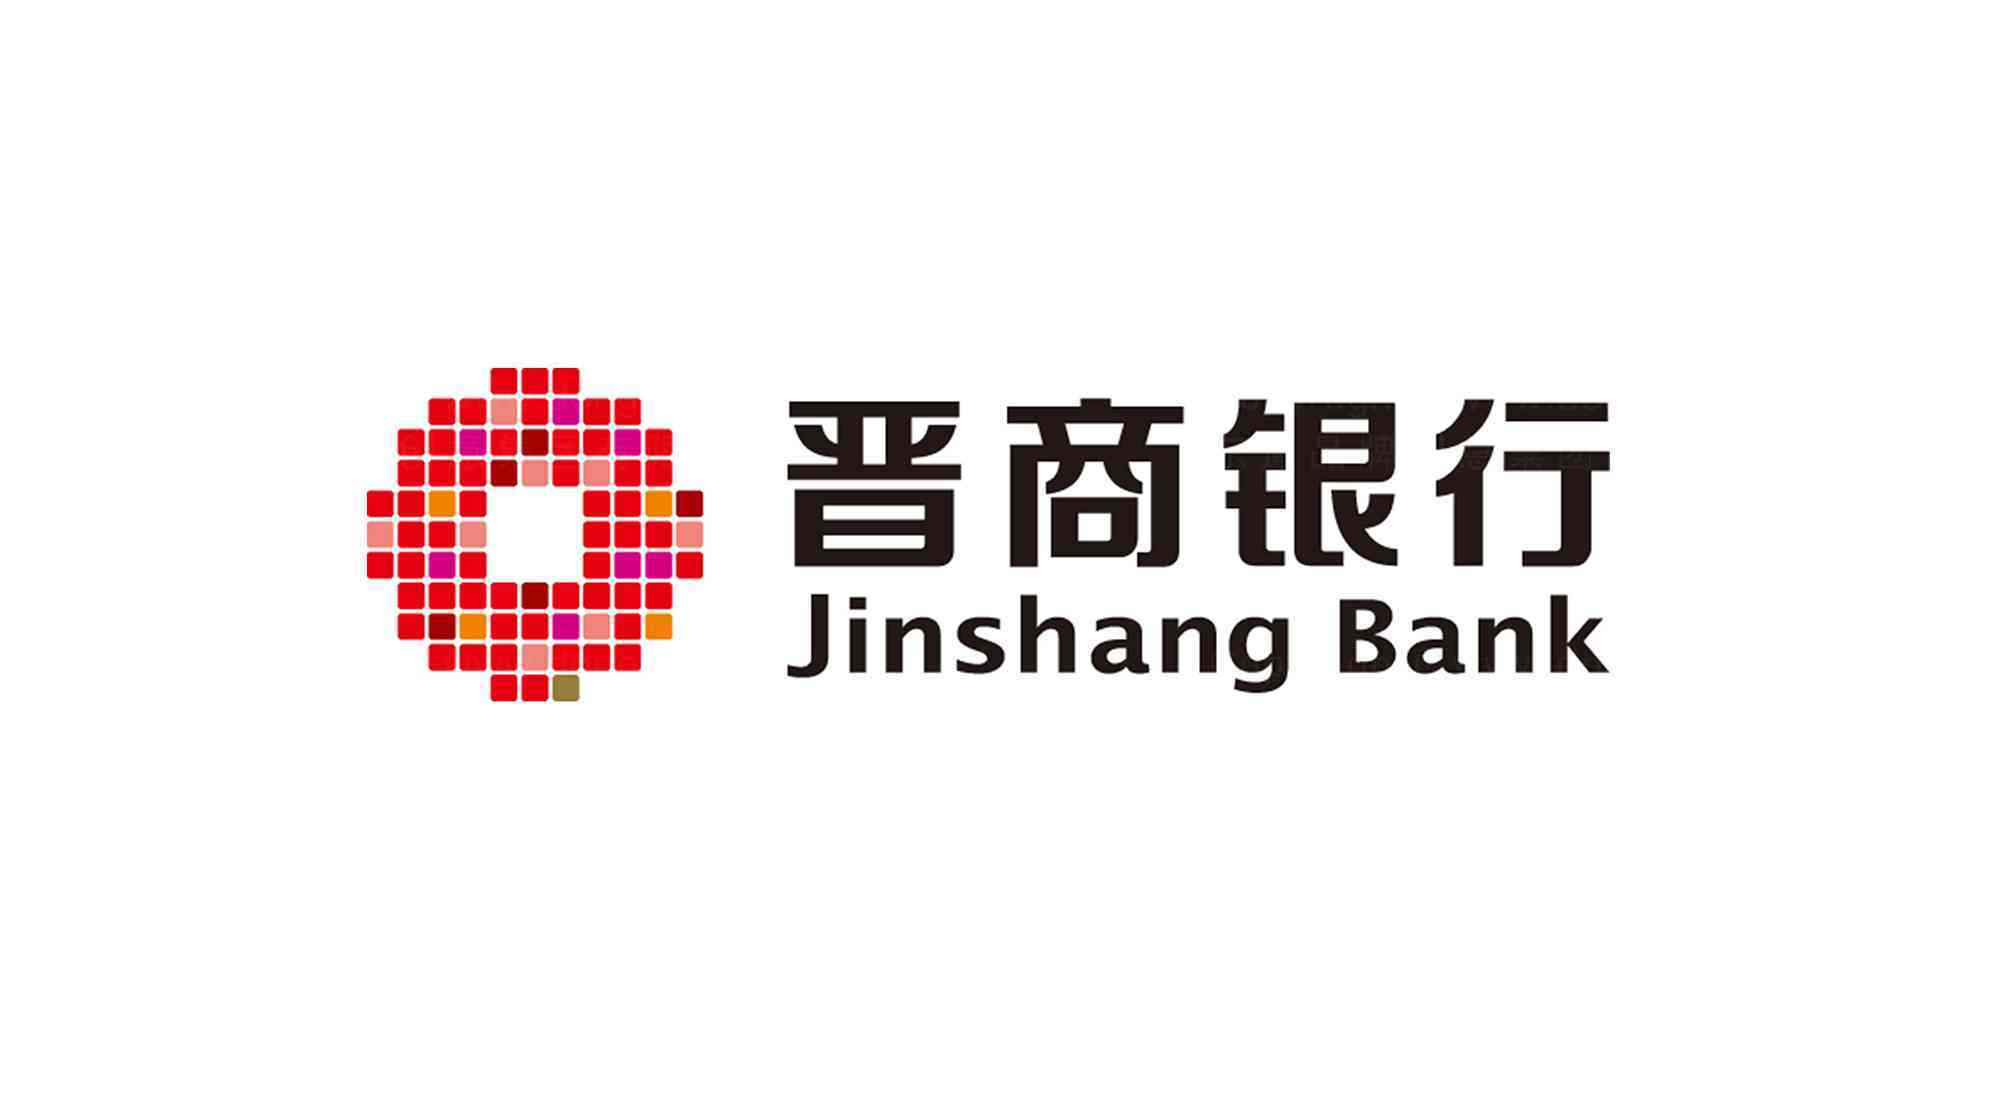 晋商银行logo设计图片素材